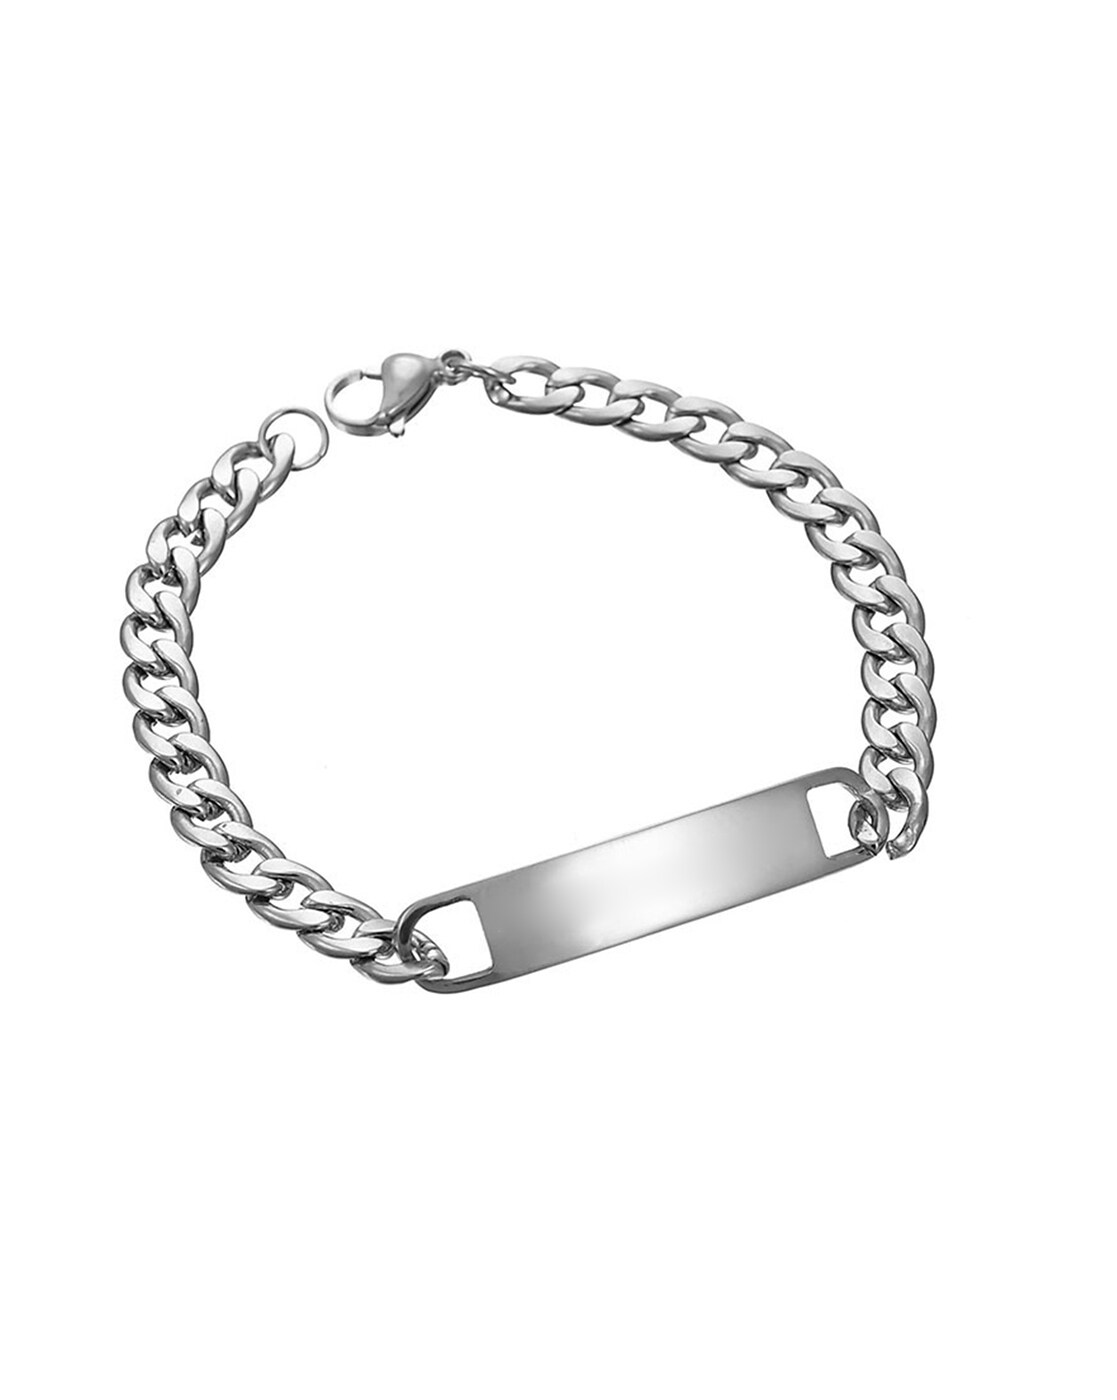 Engrave Letter Name Stainless Steel Chain Id Bracelet For Men